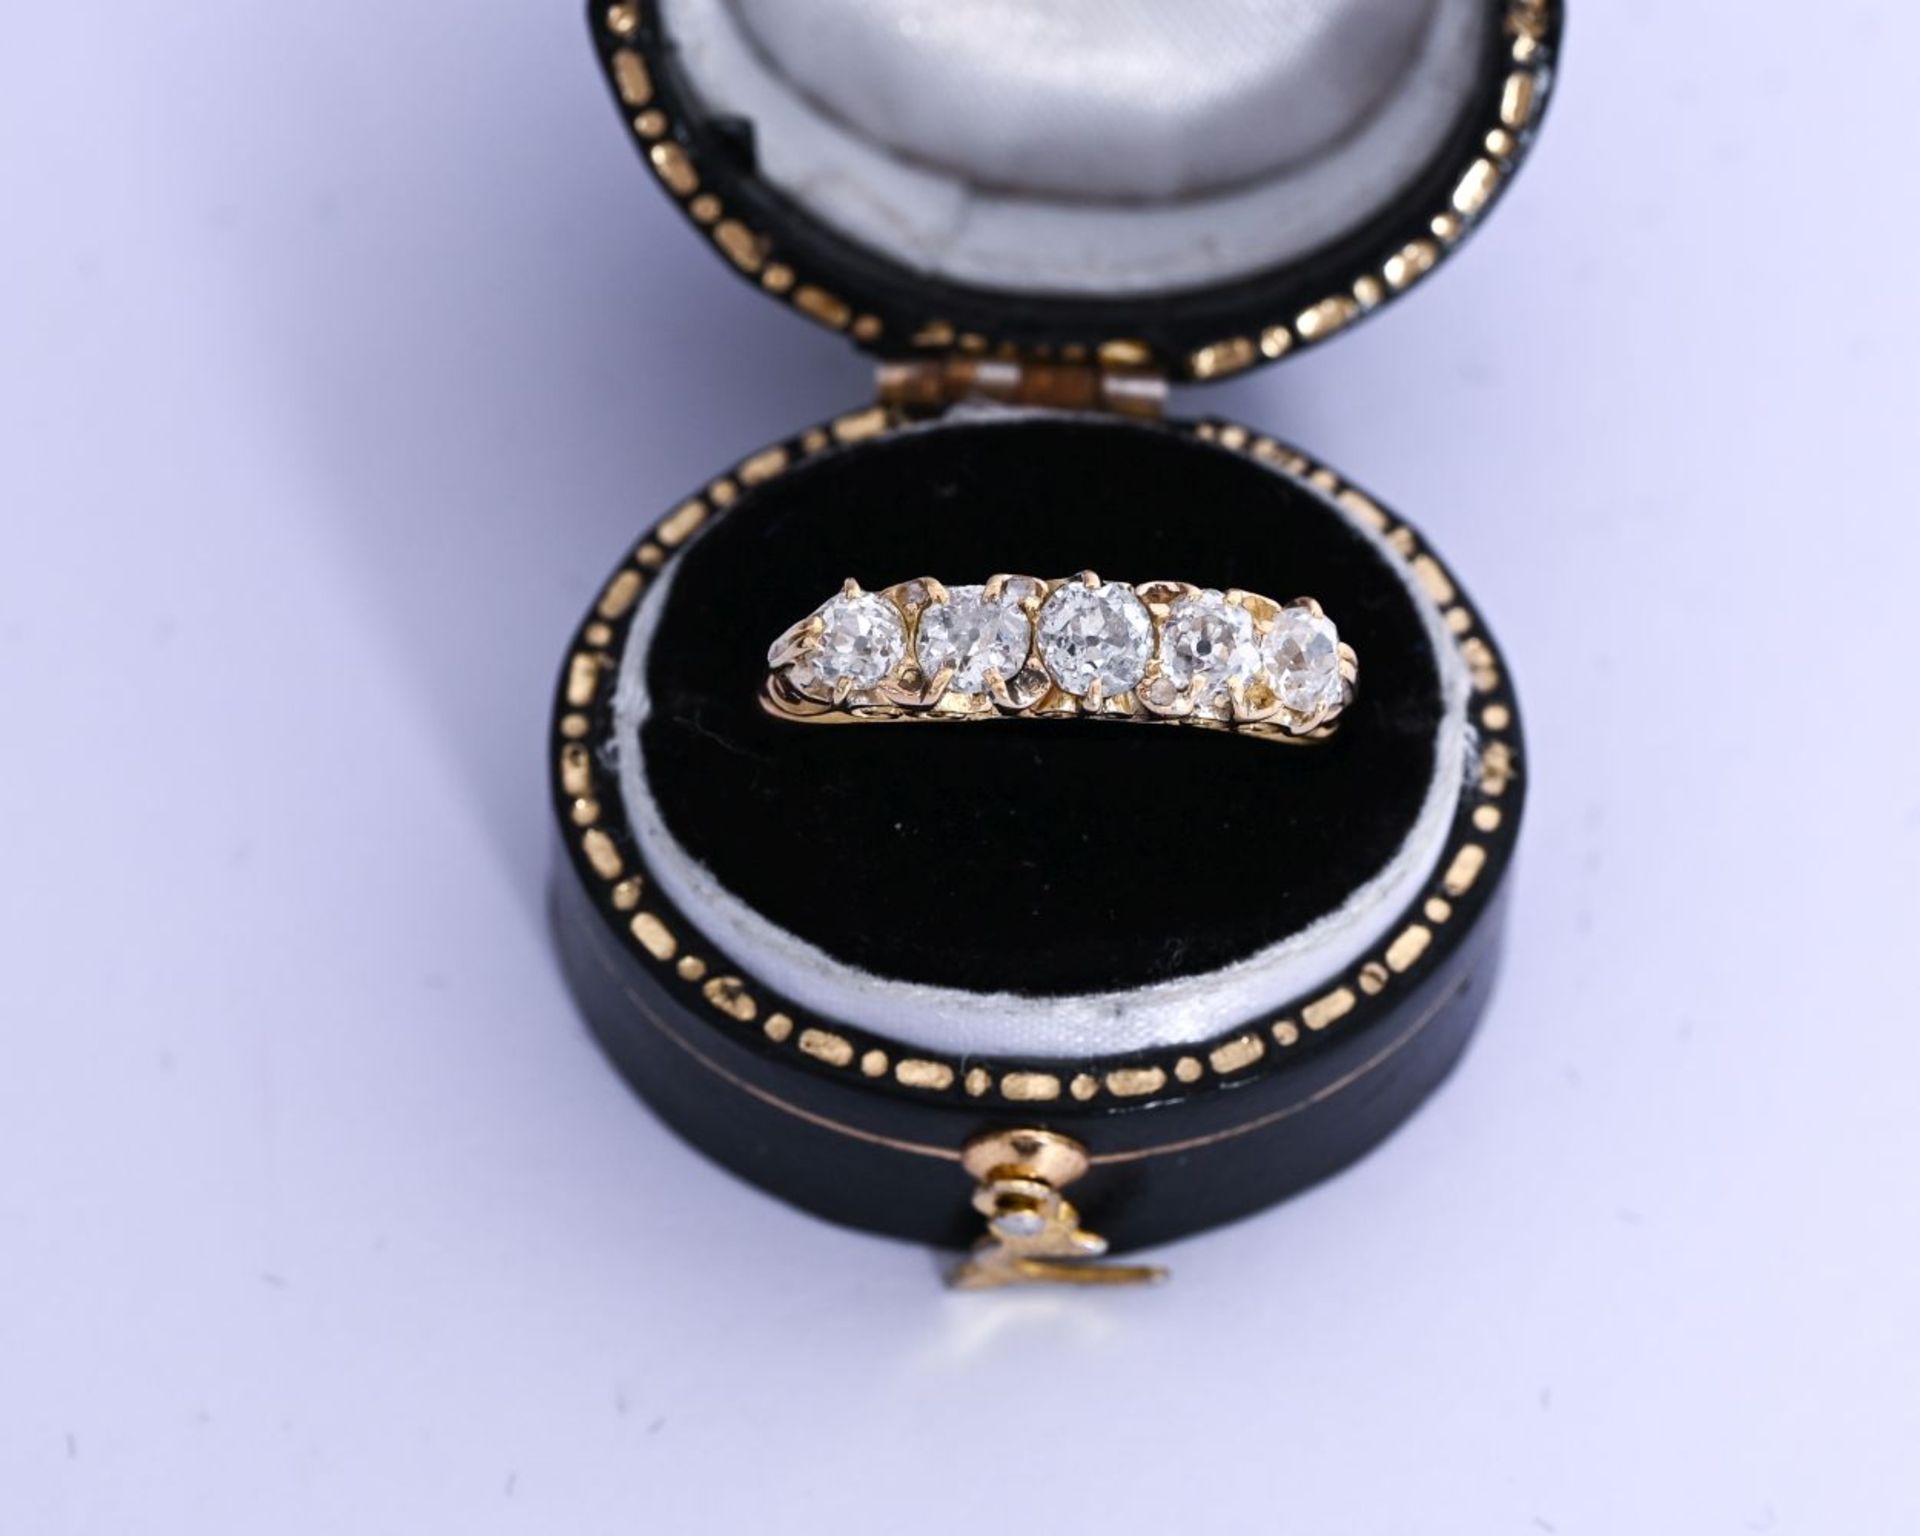 18K GOLD DIAMOND RING - Image 2 of 2